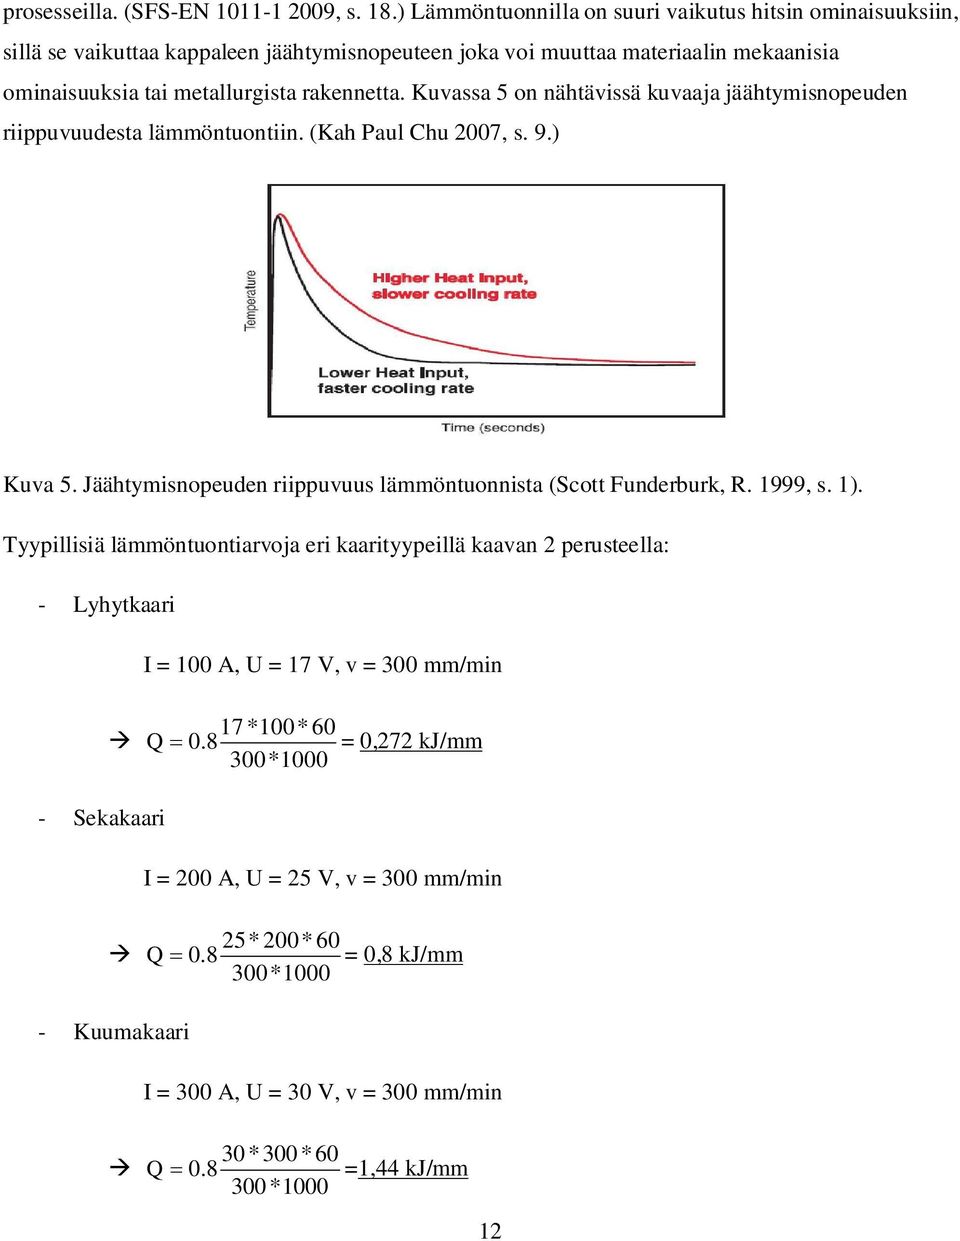 Kuvassa 5 on nähtävissä kuvaaja jäähtymisnopeuden riippuvuudesta lämmöntuontiin. (Kah Paul Chu 2007, s. 9.) Kuva 5. Jäähtymisnopeuden riippuvuus lämmöntuonnista (Scott Funderburk, R. 1999, s.